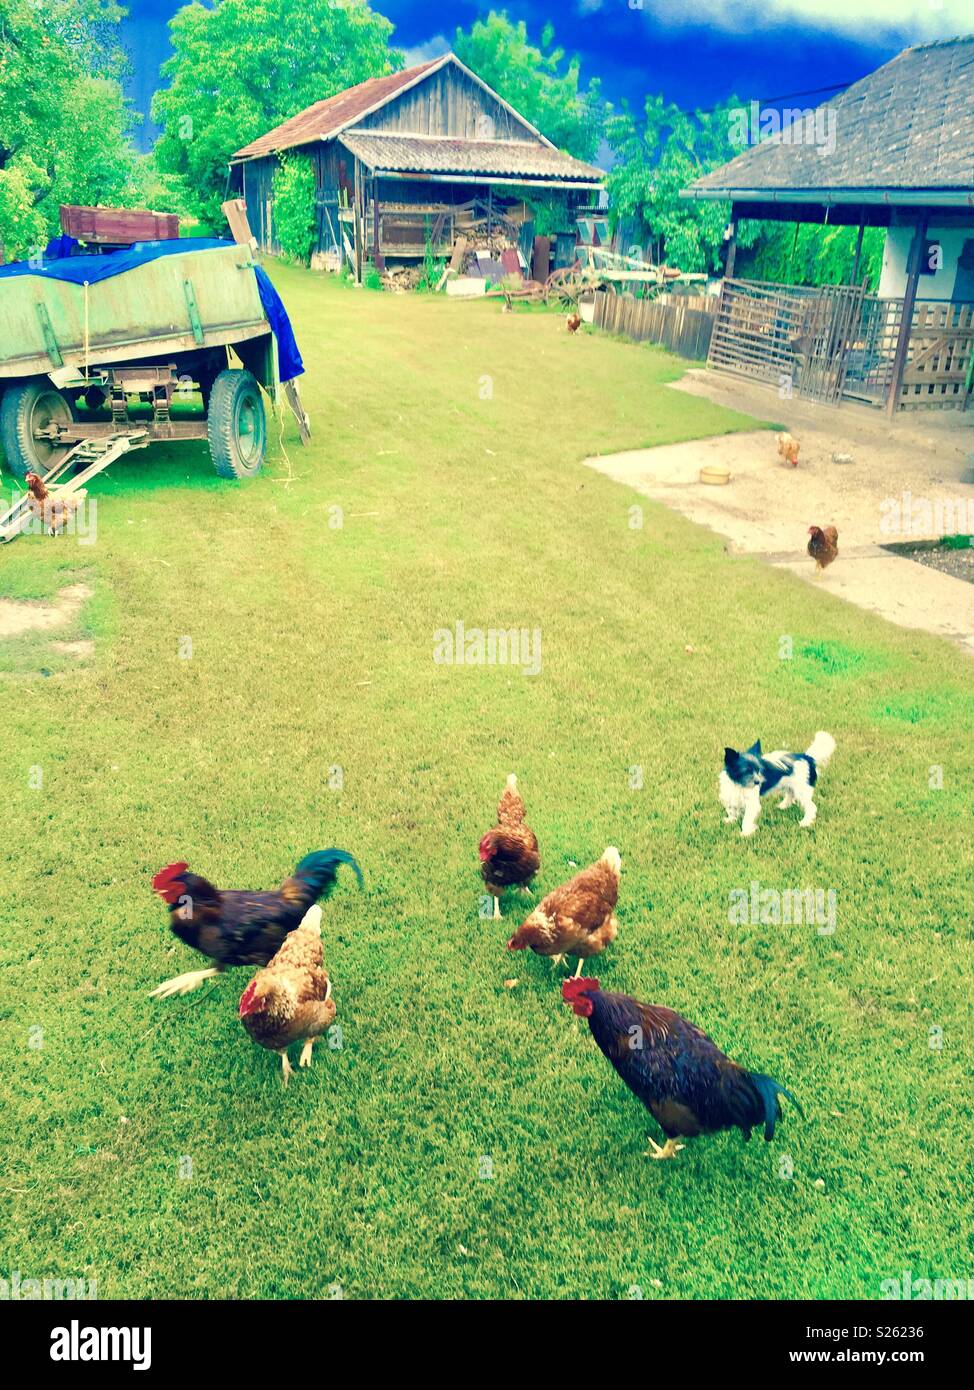 Dog herding chickens Stock Photo